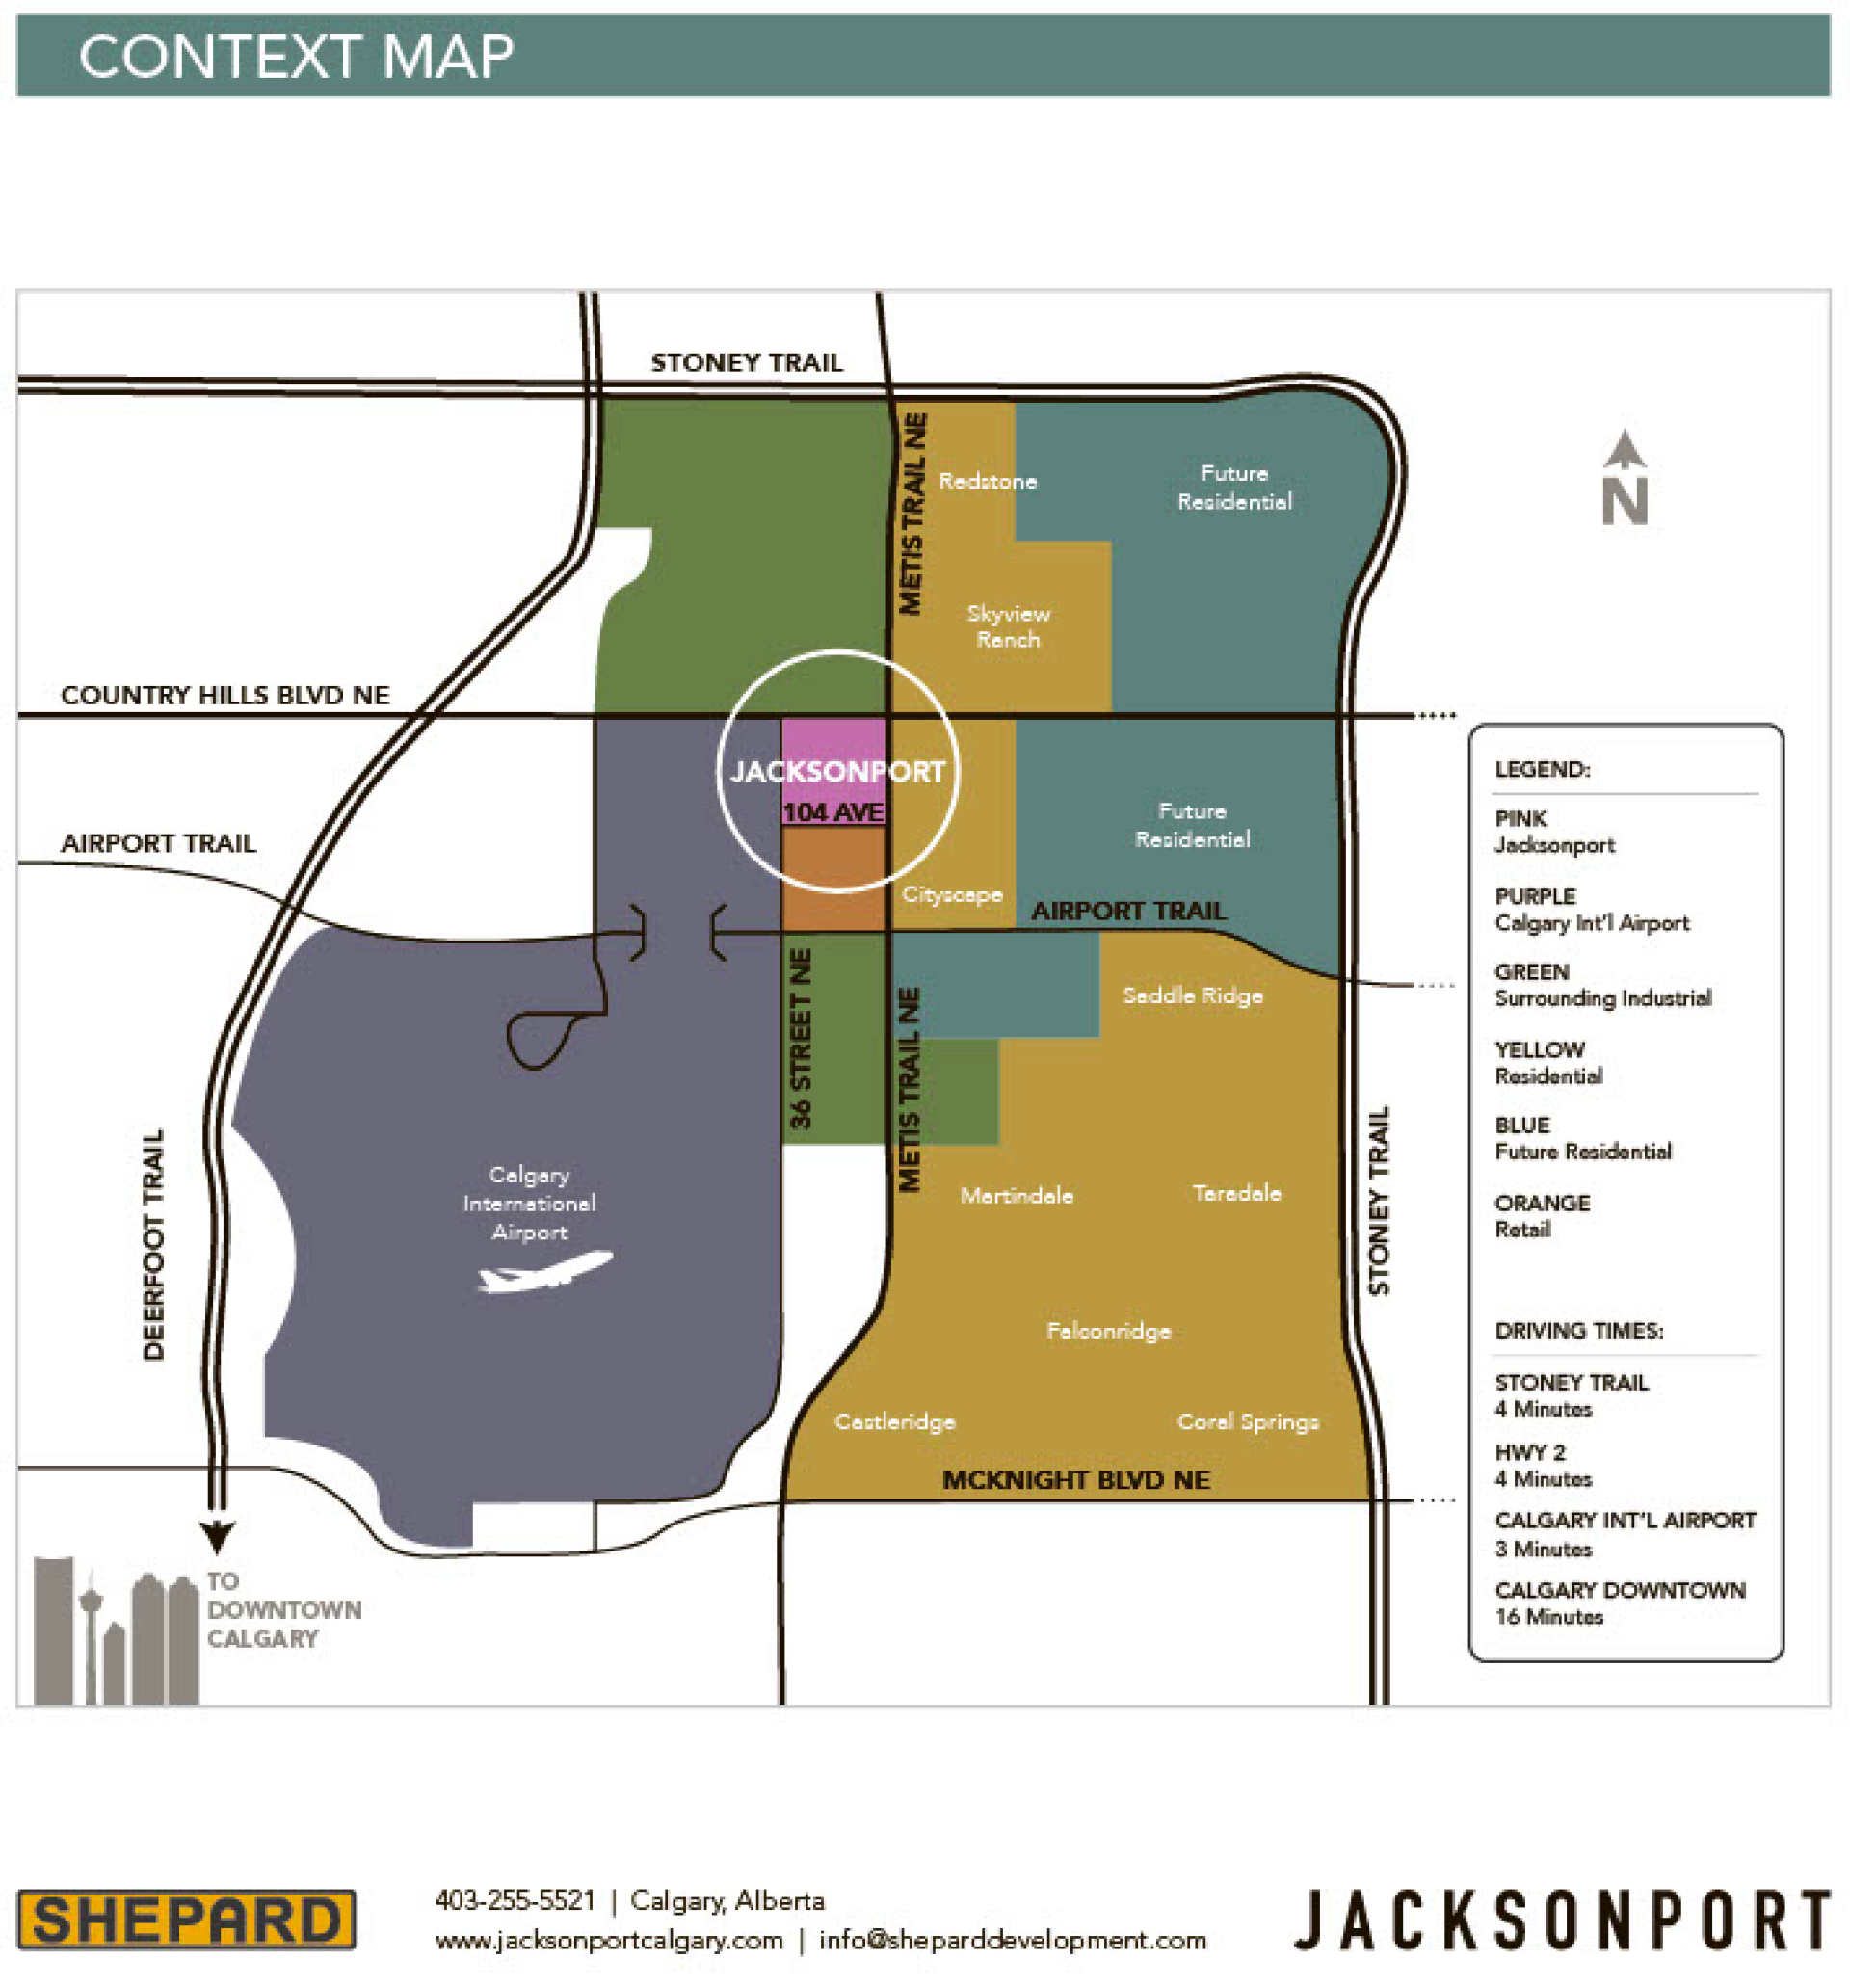 Shepard-Development-Jacksonport-Context-Map1024_1.png